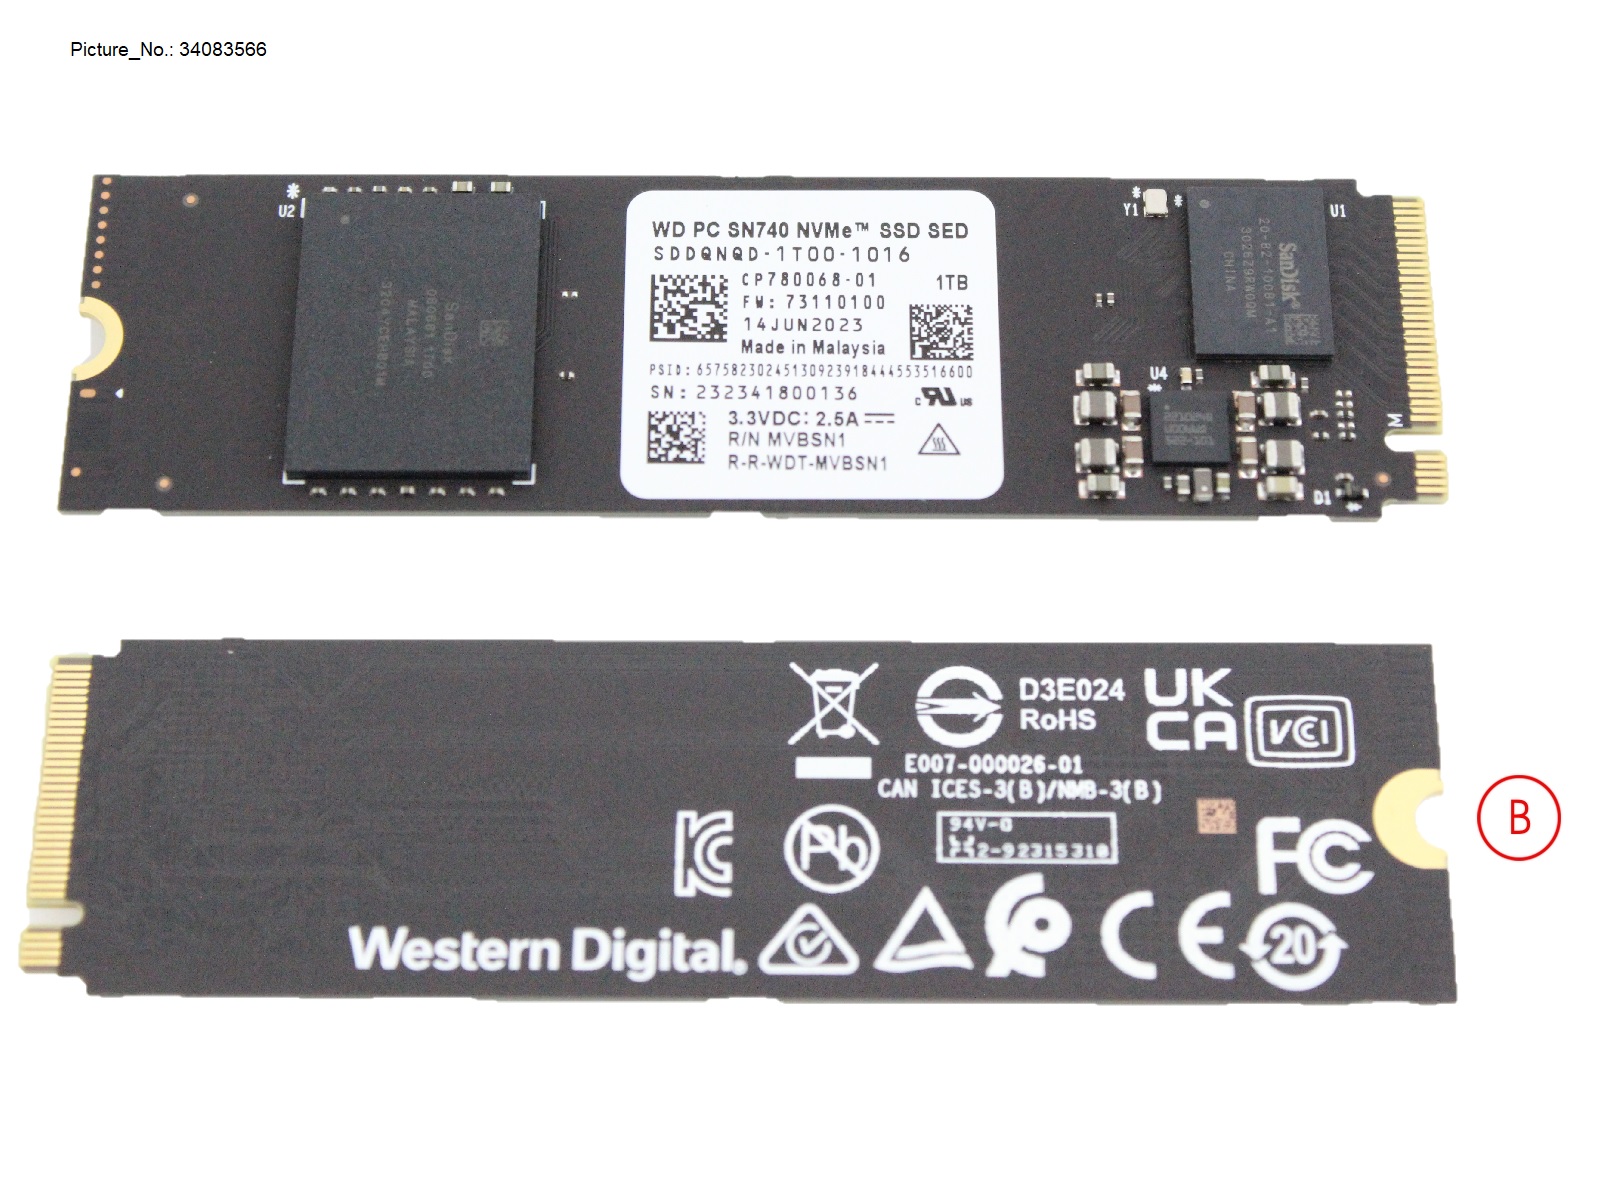 SSD PCIE M.2 SN740 1TB G4 (SED)